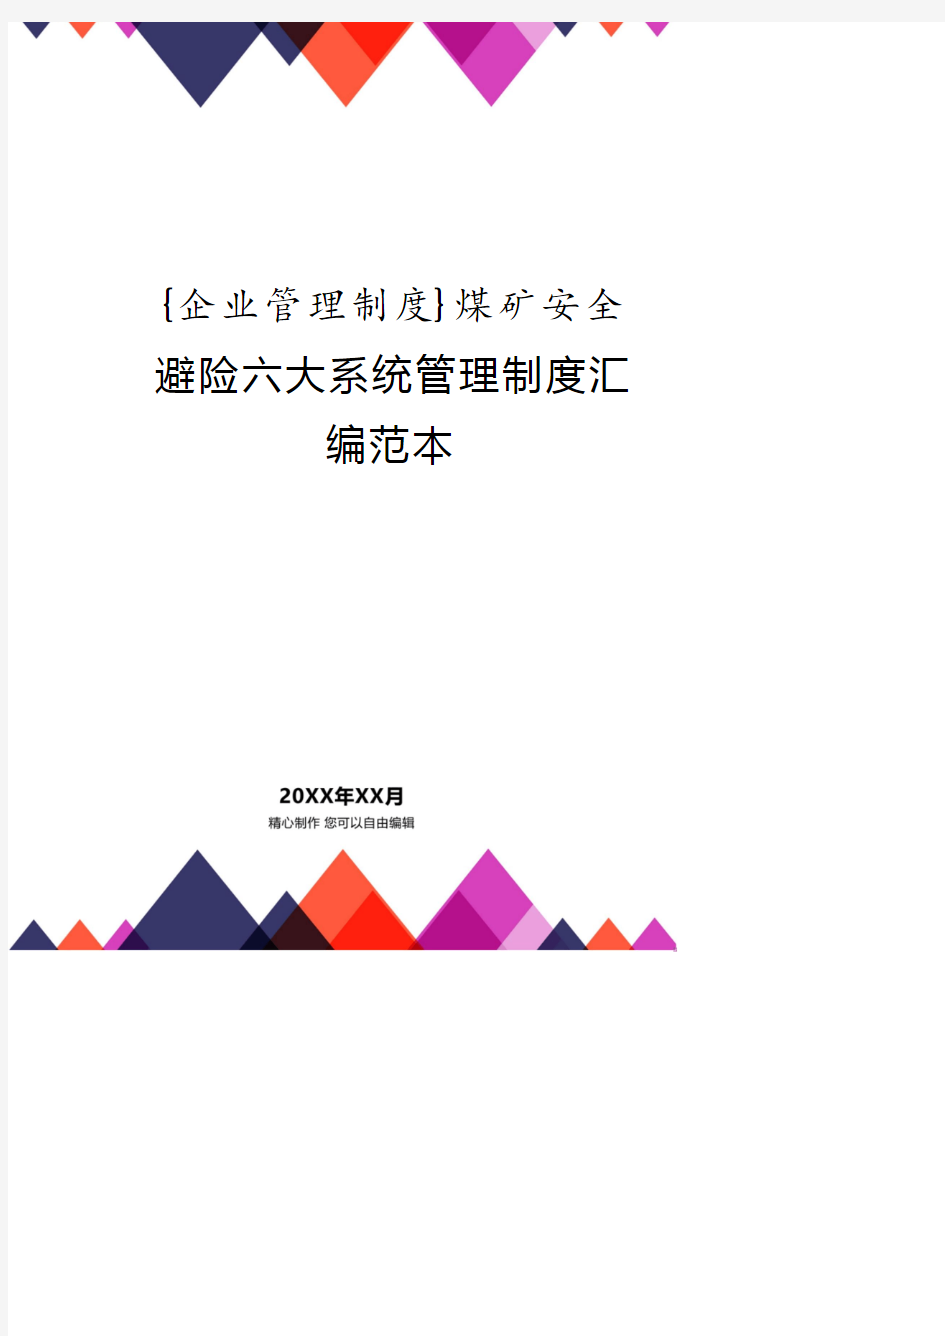 煤矿安全避险六大系统管理制度汇编范本.pdf